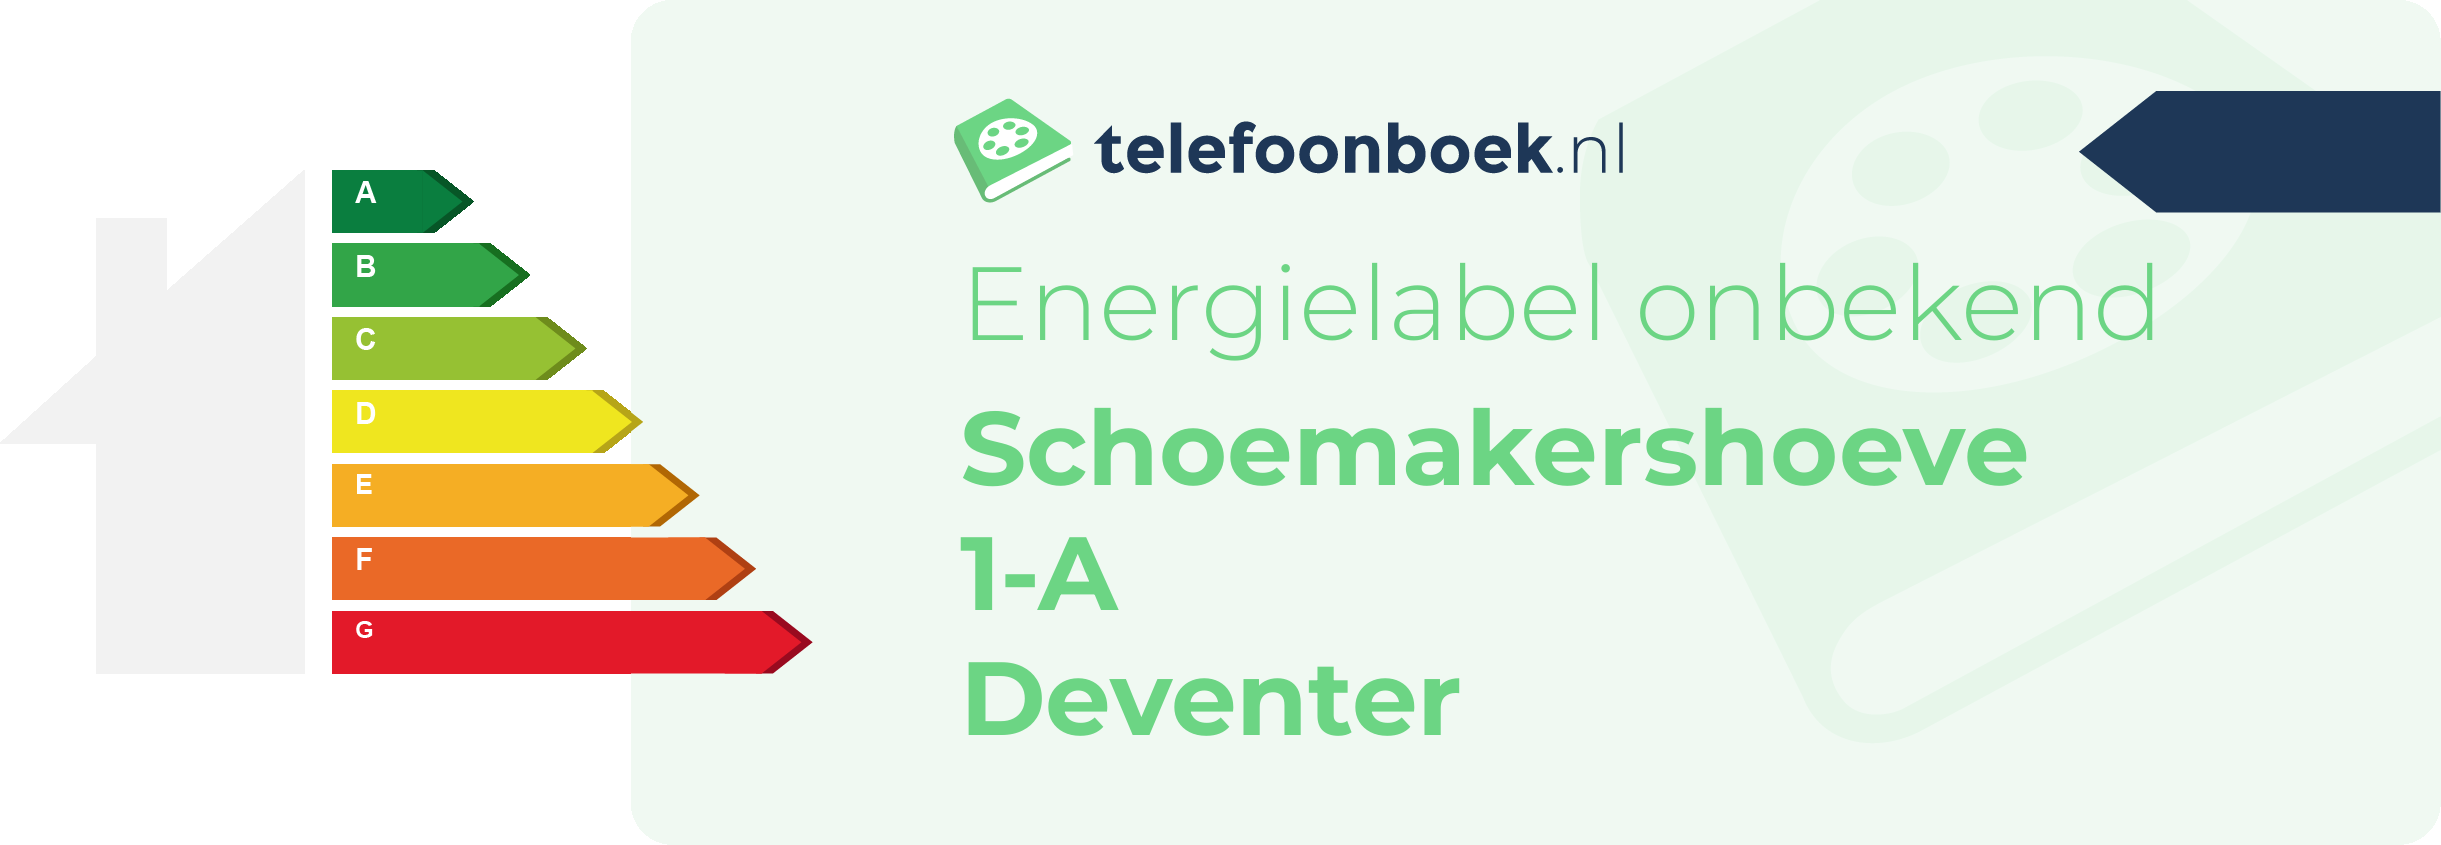 Energielabel Schoemakershoeve 1-A Deventer